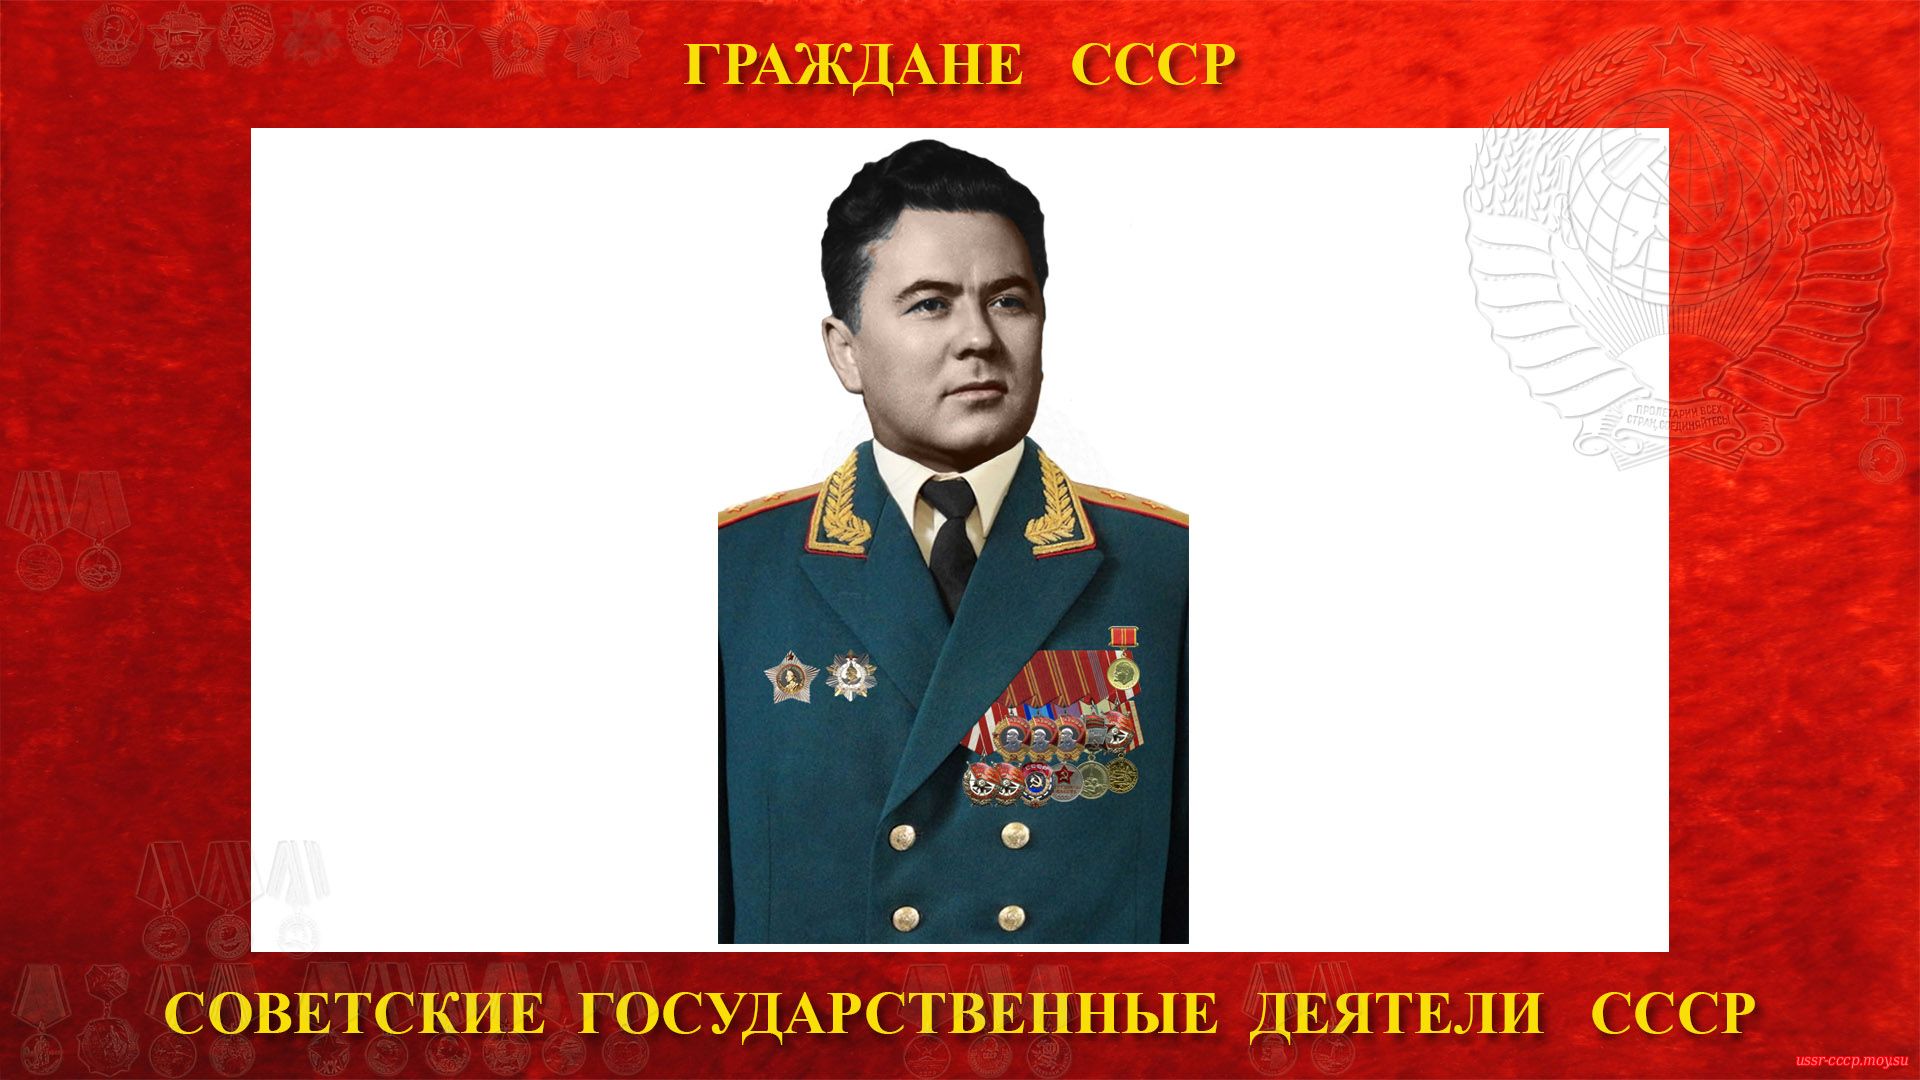 Ковалёв Иван Владимирович — Советский государственный деятель СССР (биография)